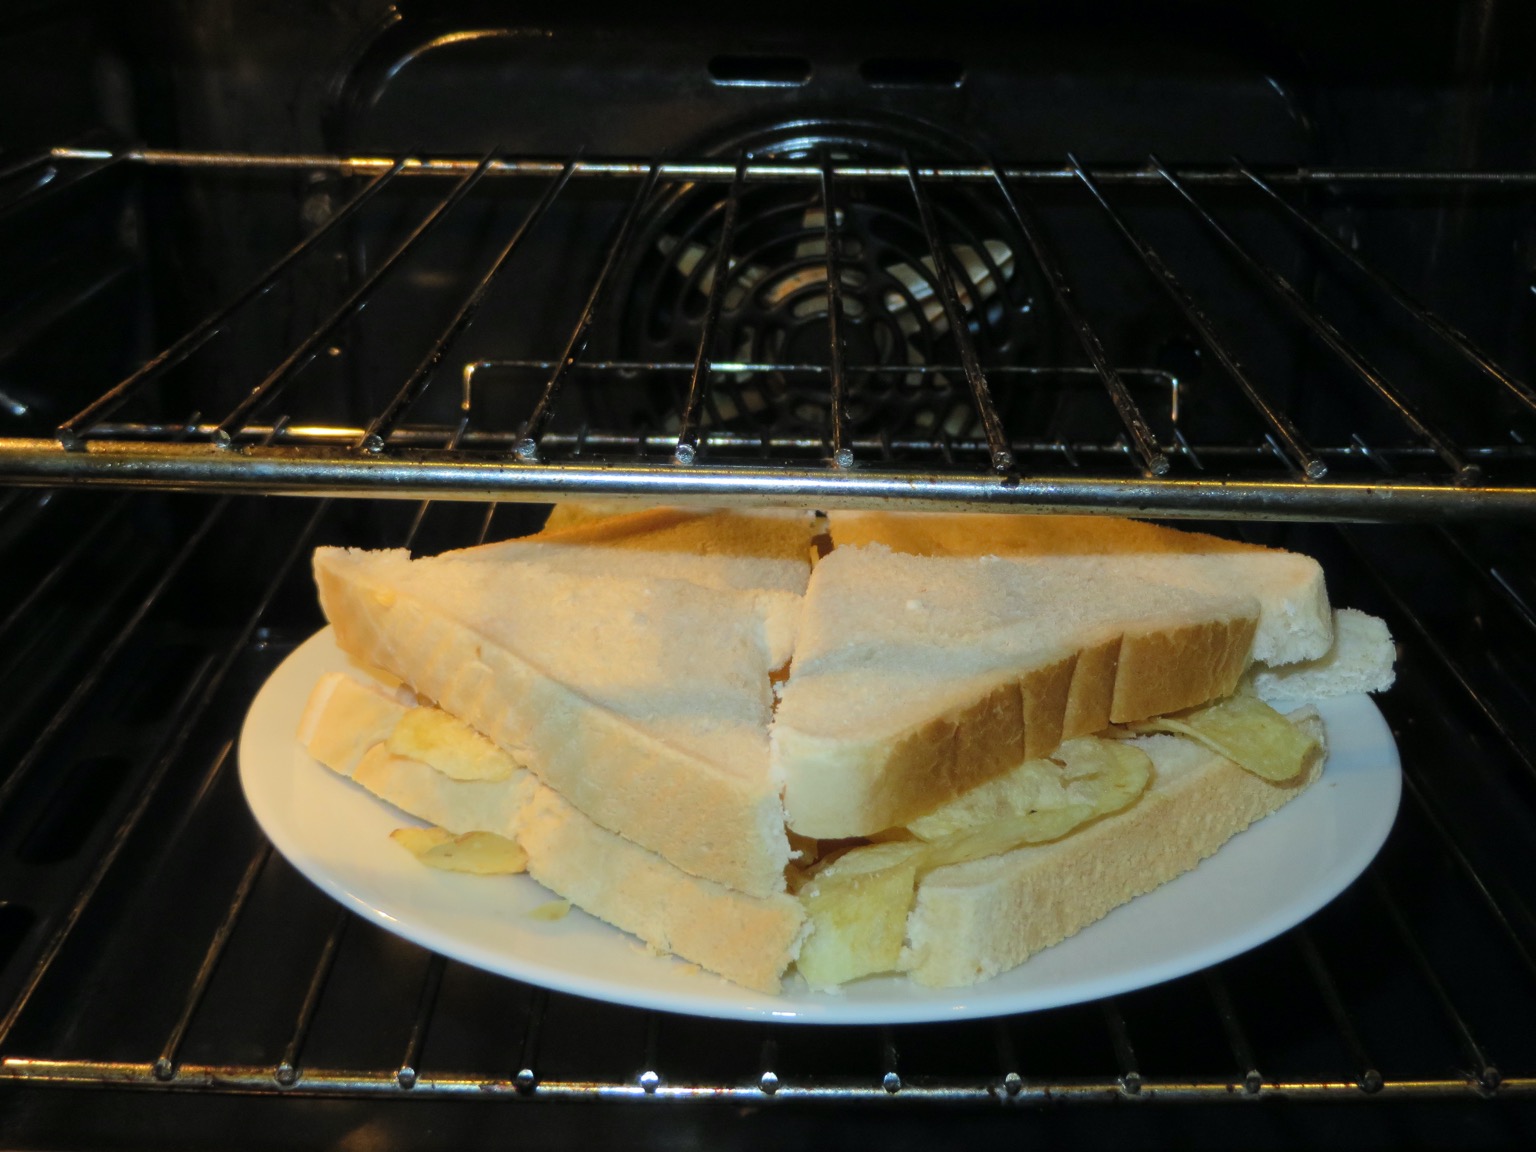 Quartered white crisp sandwich in an oven